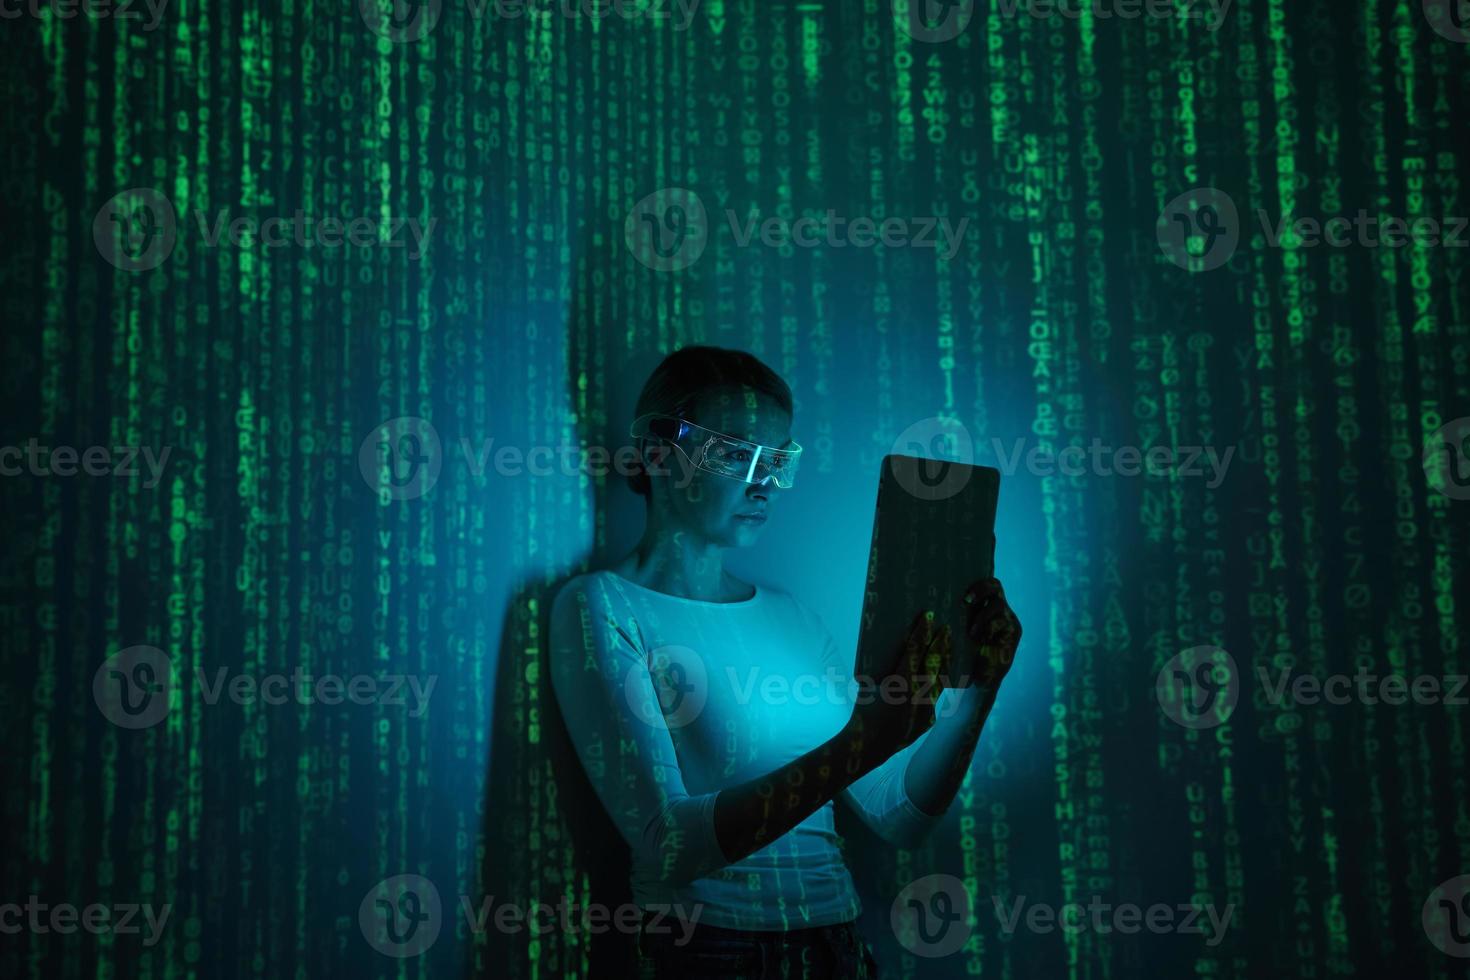 självsäker kvinna i trogen glasögon använder sig av digital läsplatta mot mörk bakgrund med grön symboler foto